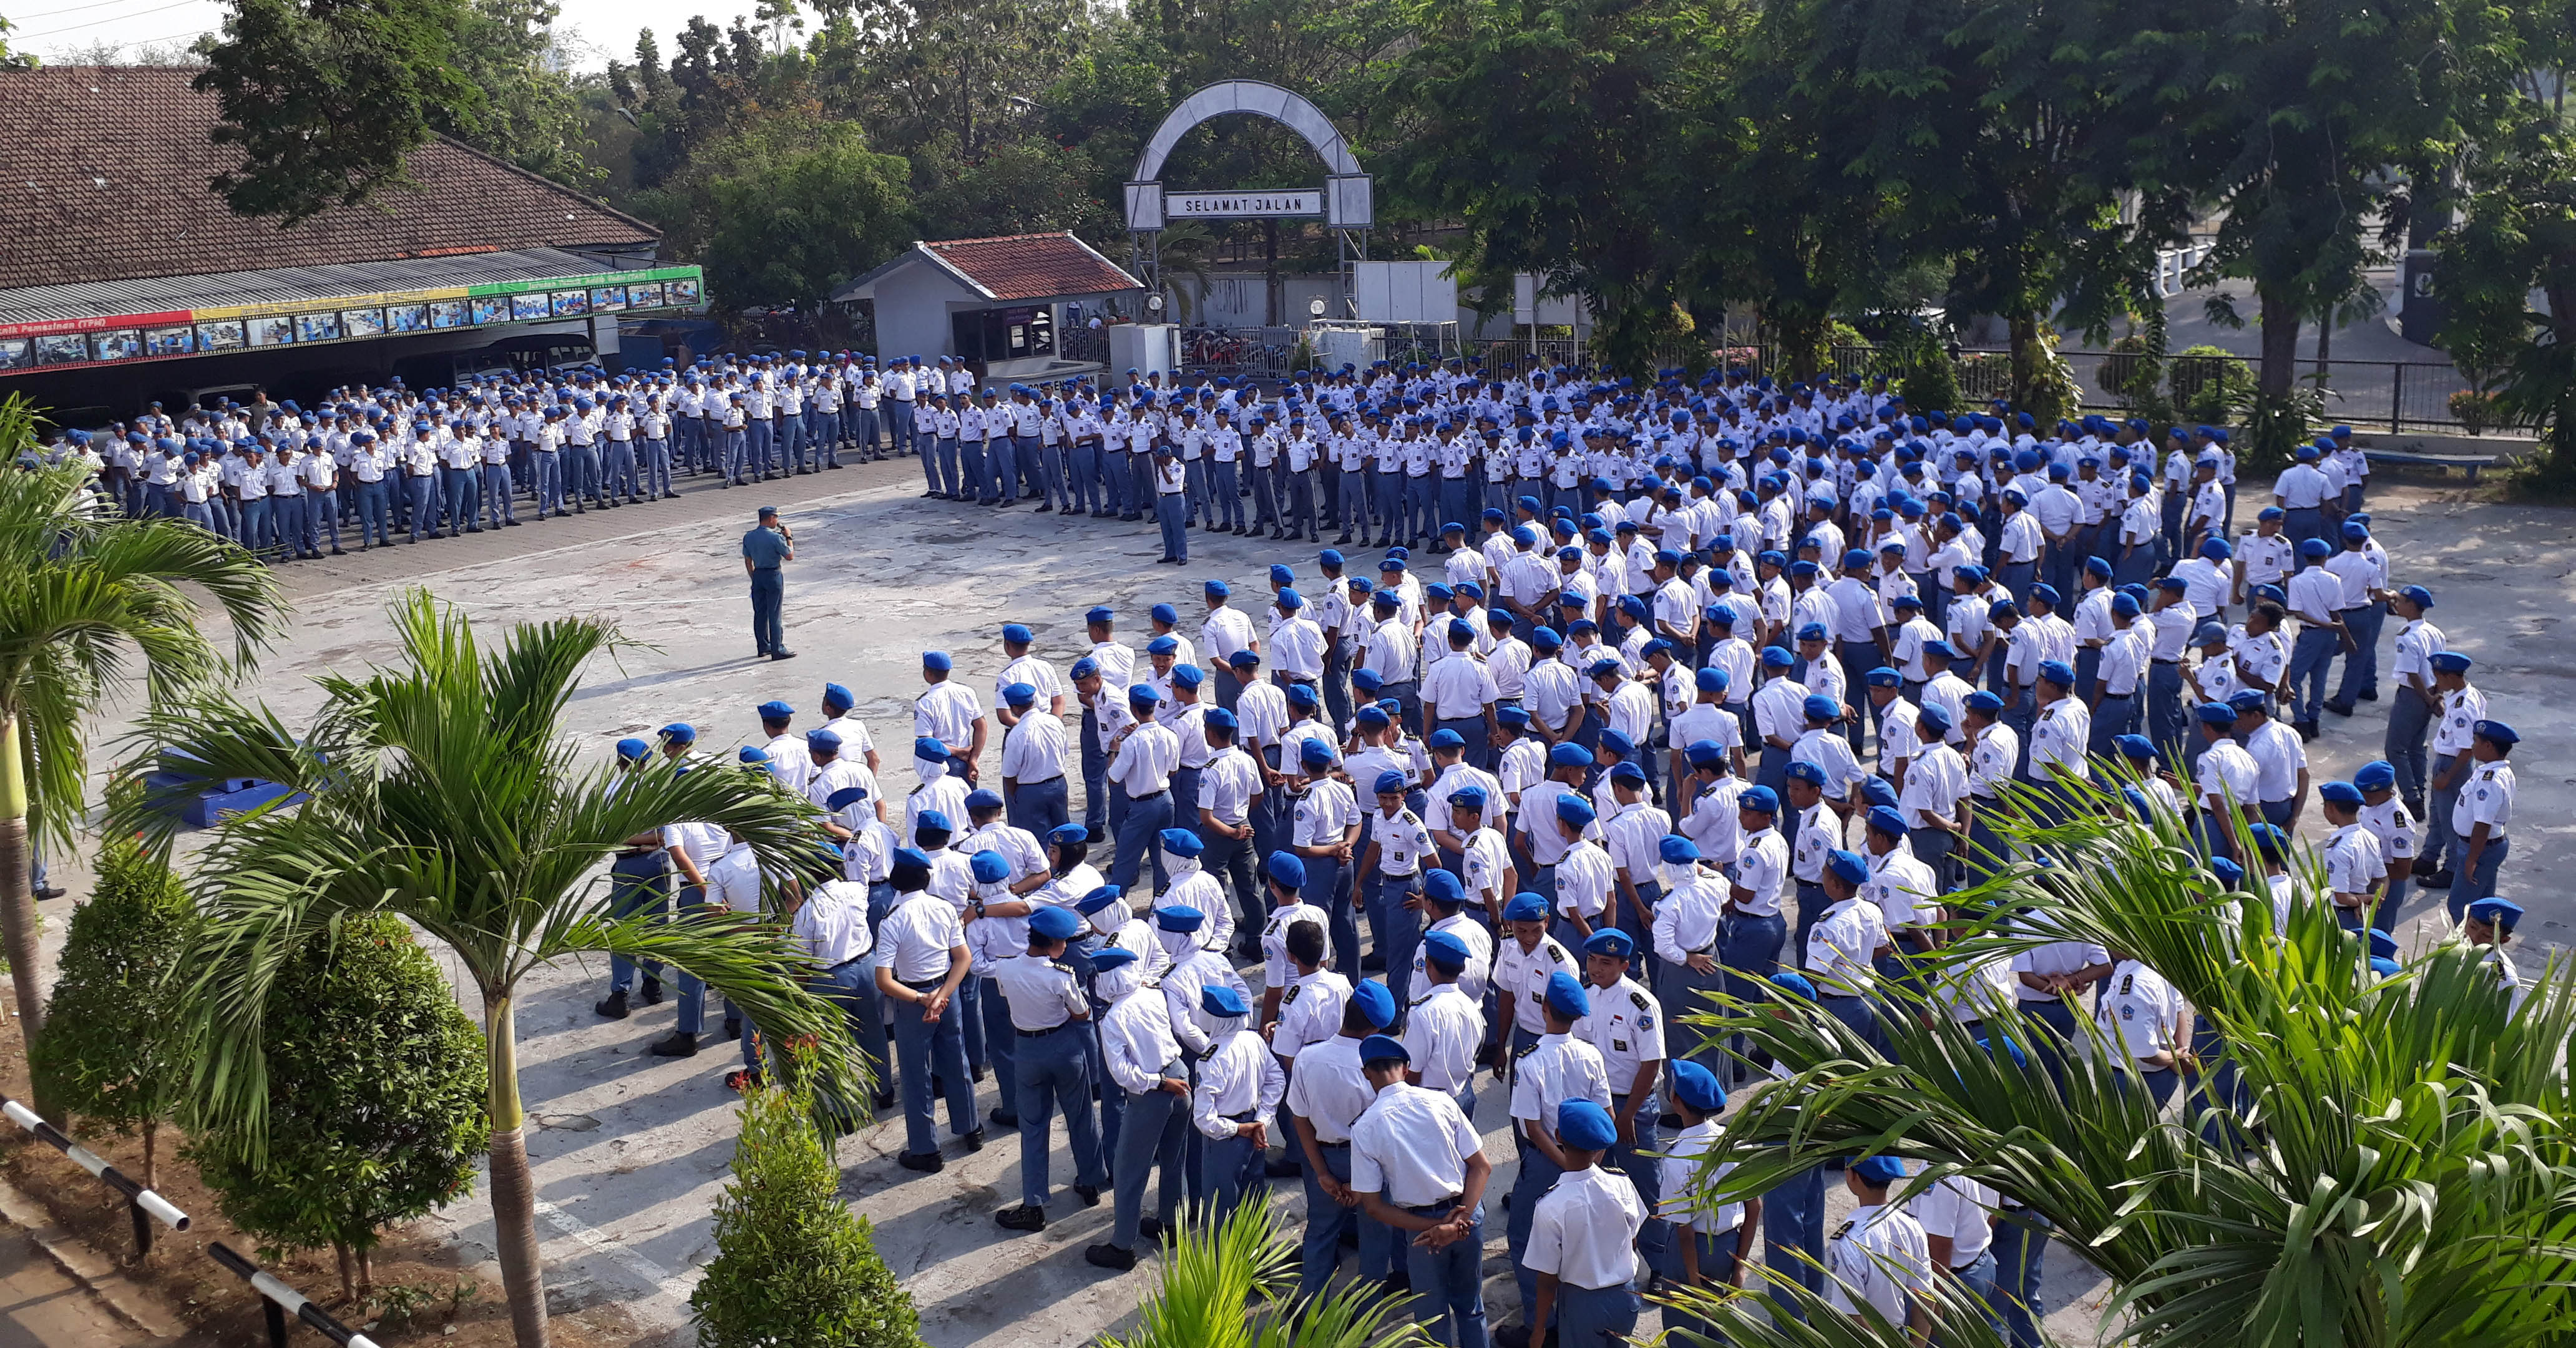  PEMBENTUKAN KARAKER : Suasana pelaksanaan apel pagi di SMK KAL-1  Surabaya. tradisi apel pagi sudah berlangsung sejak sekolah ini berdiri di tahun 1961.